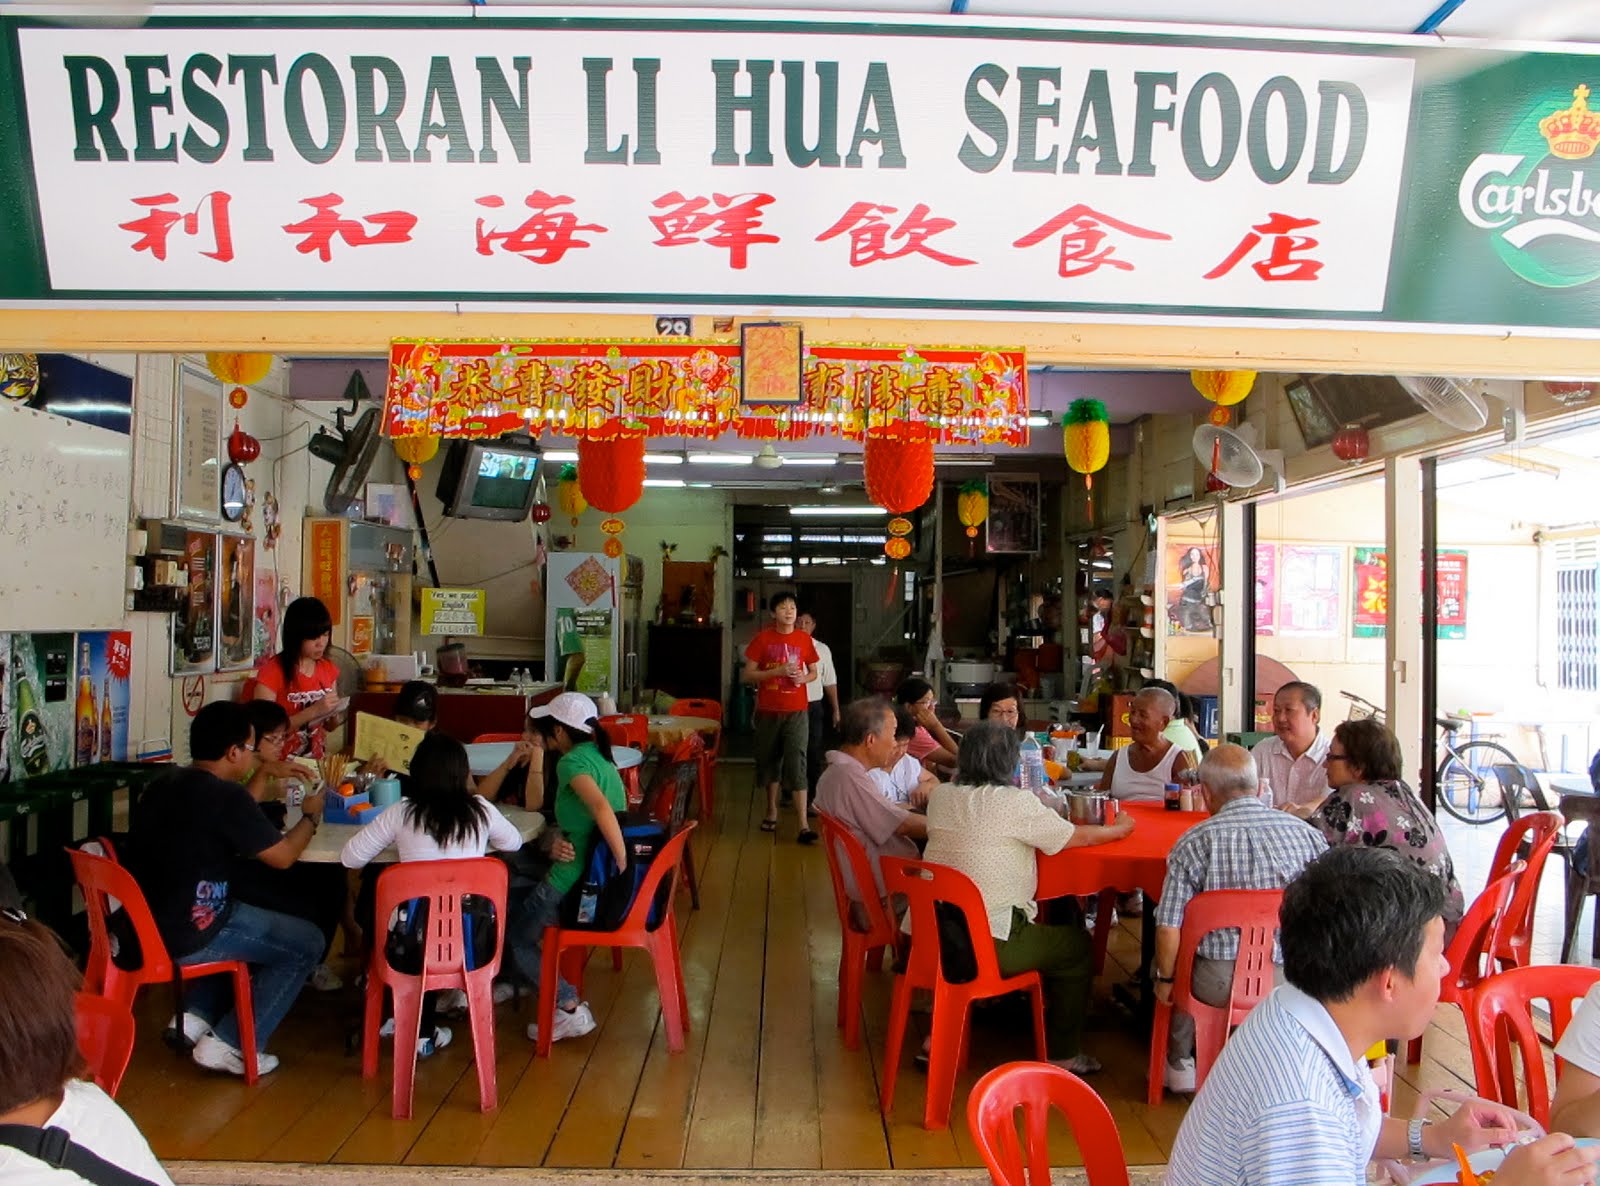 Port Klang Seafood Restaurant / FK Hailam Seafood Restaurant, Port